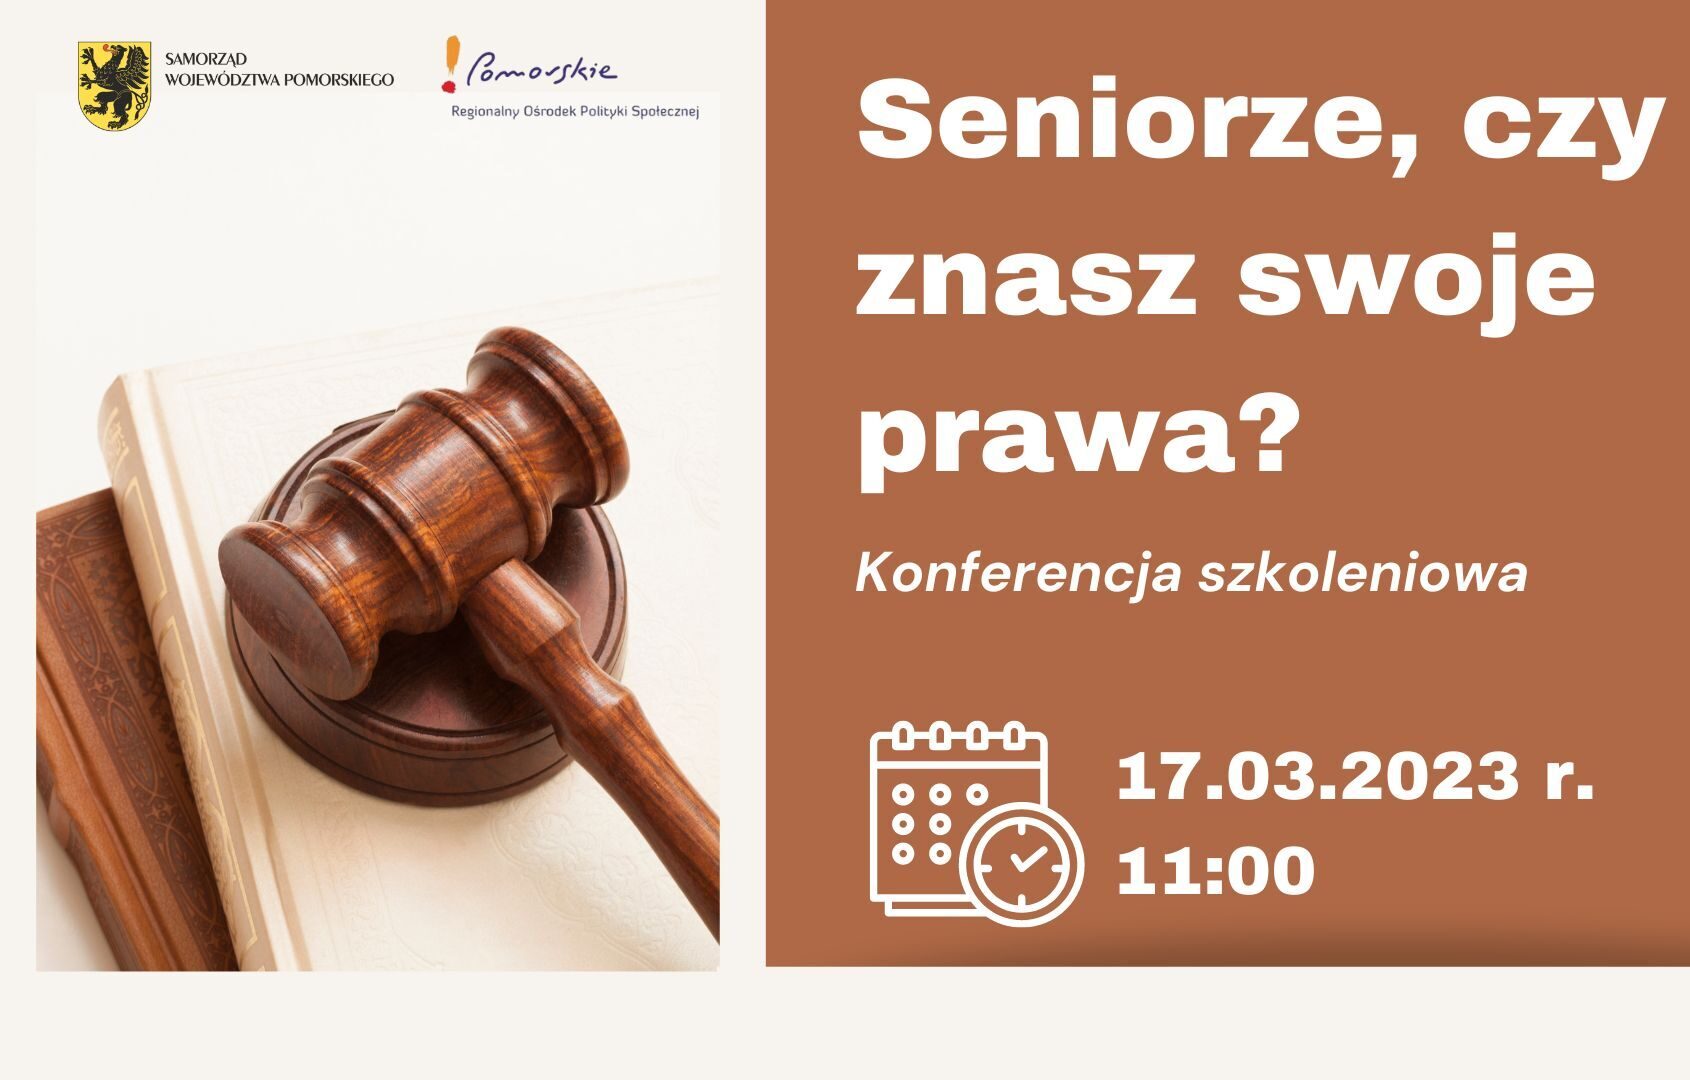 Już 17 marca odbędzie się konferencja szkoleniowa pt. Seniorze, czy znasz swoje prawa? [ZAPROSZENIE]